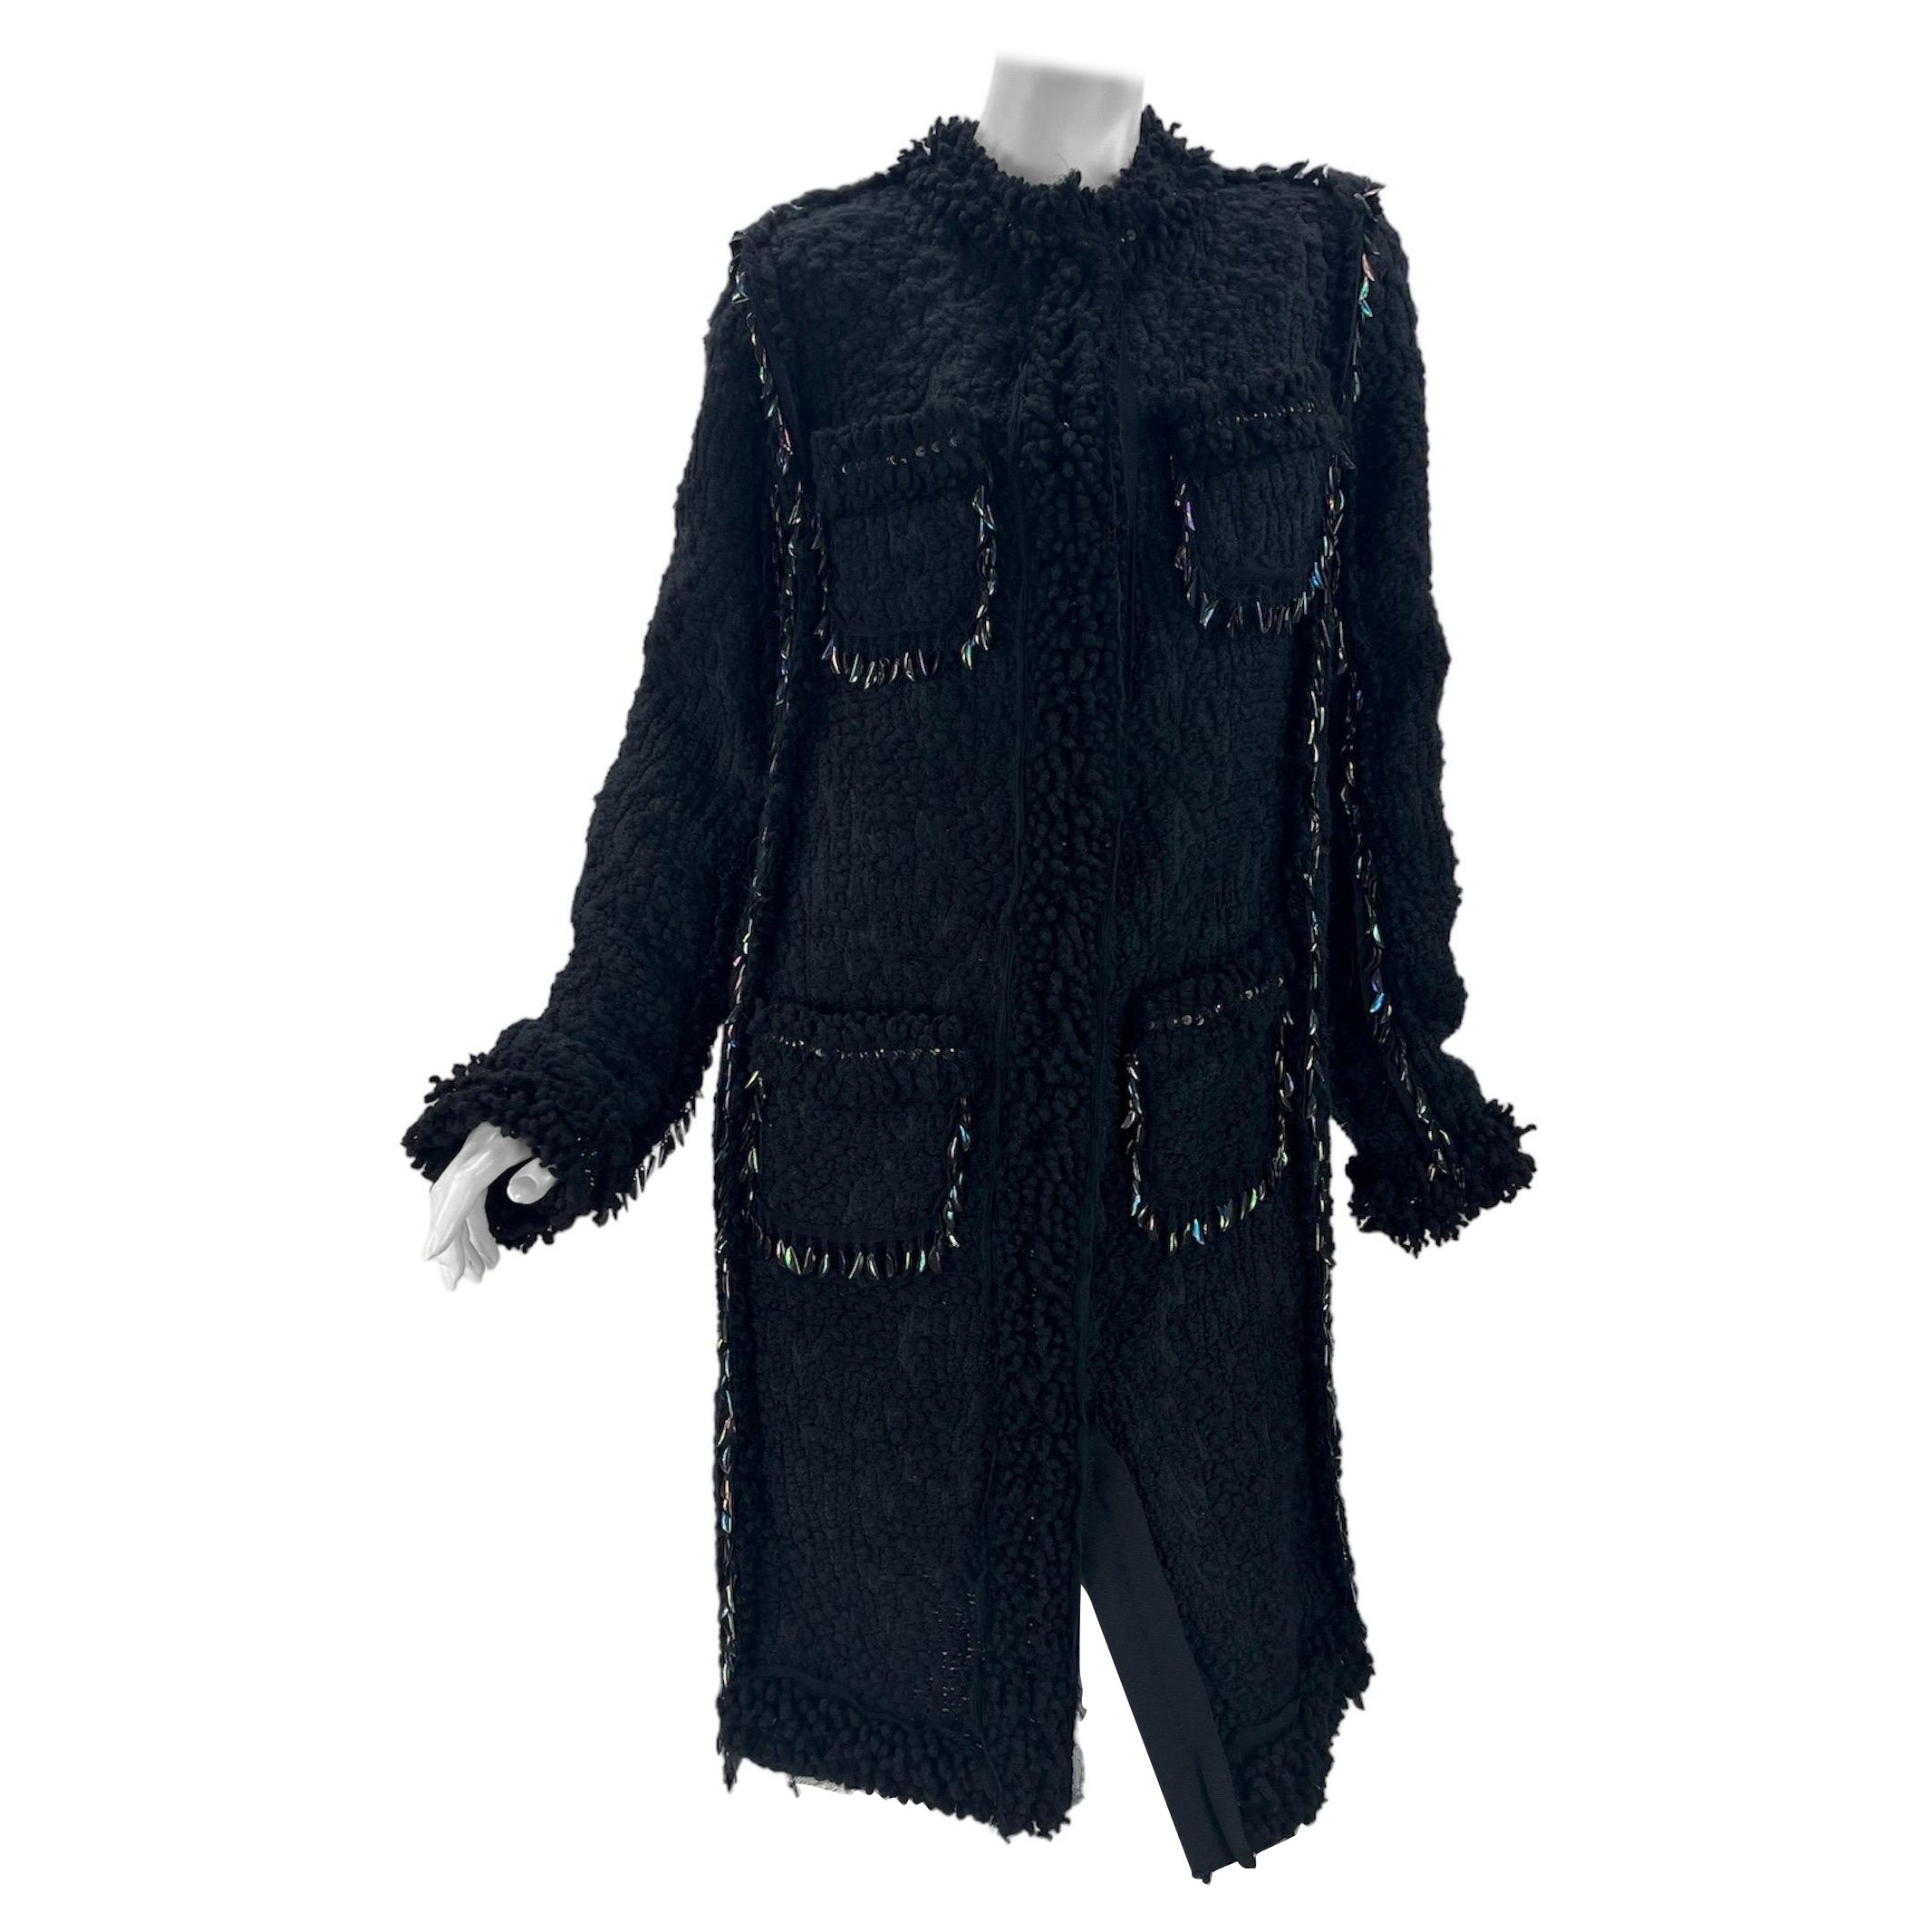 F/W 2010 Vintage Lanvin black embellished boucle tweed coat 40 - 8 NWT For Sale